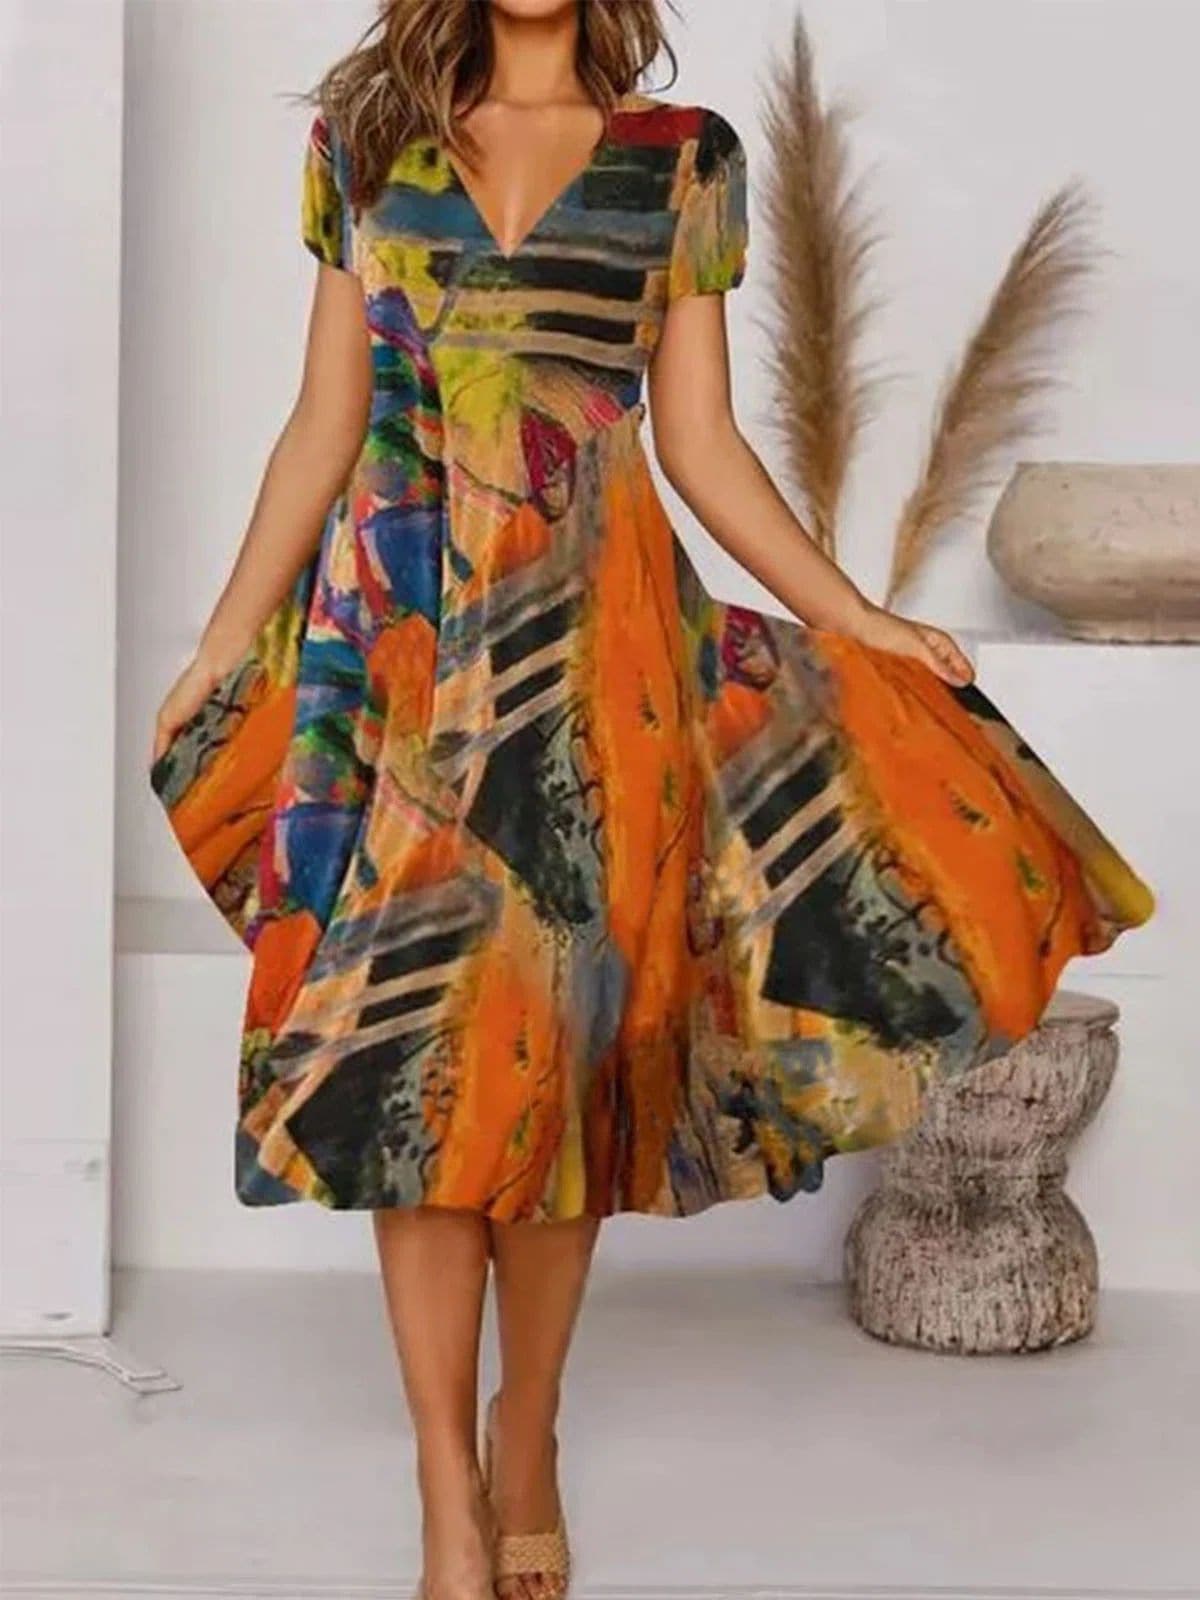 Bodil - Elegant klänning av hög kvalitet